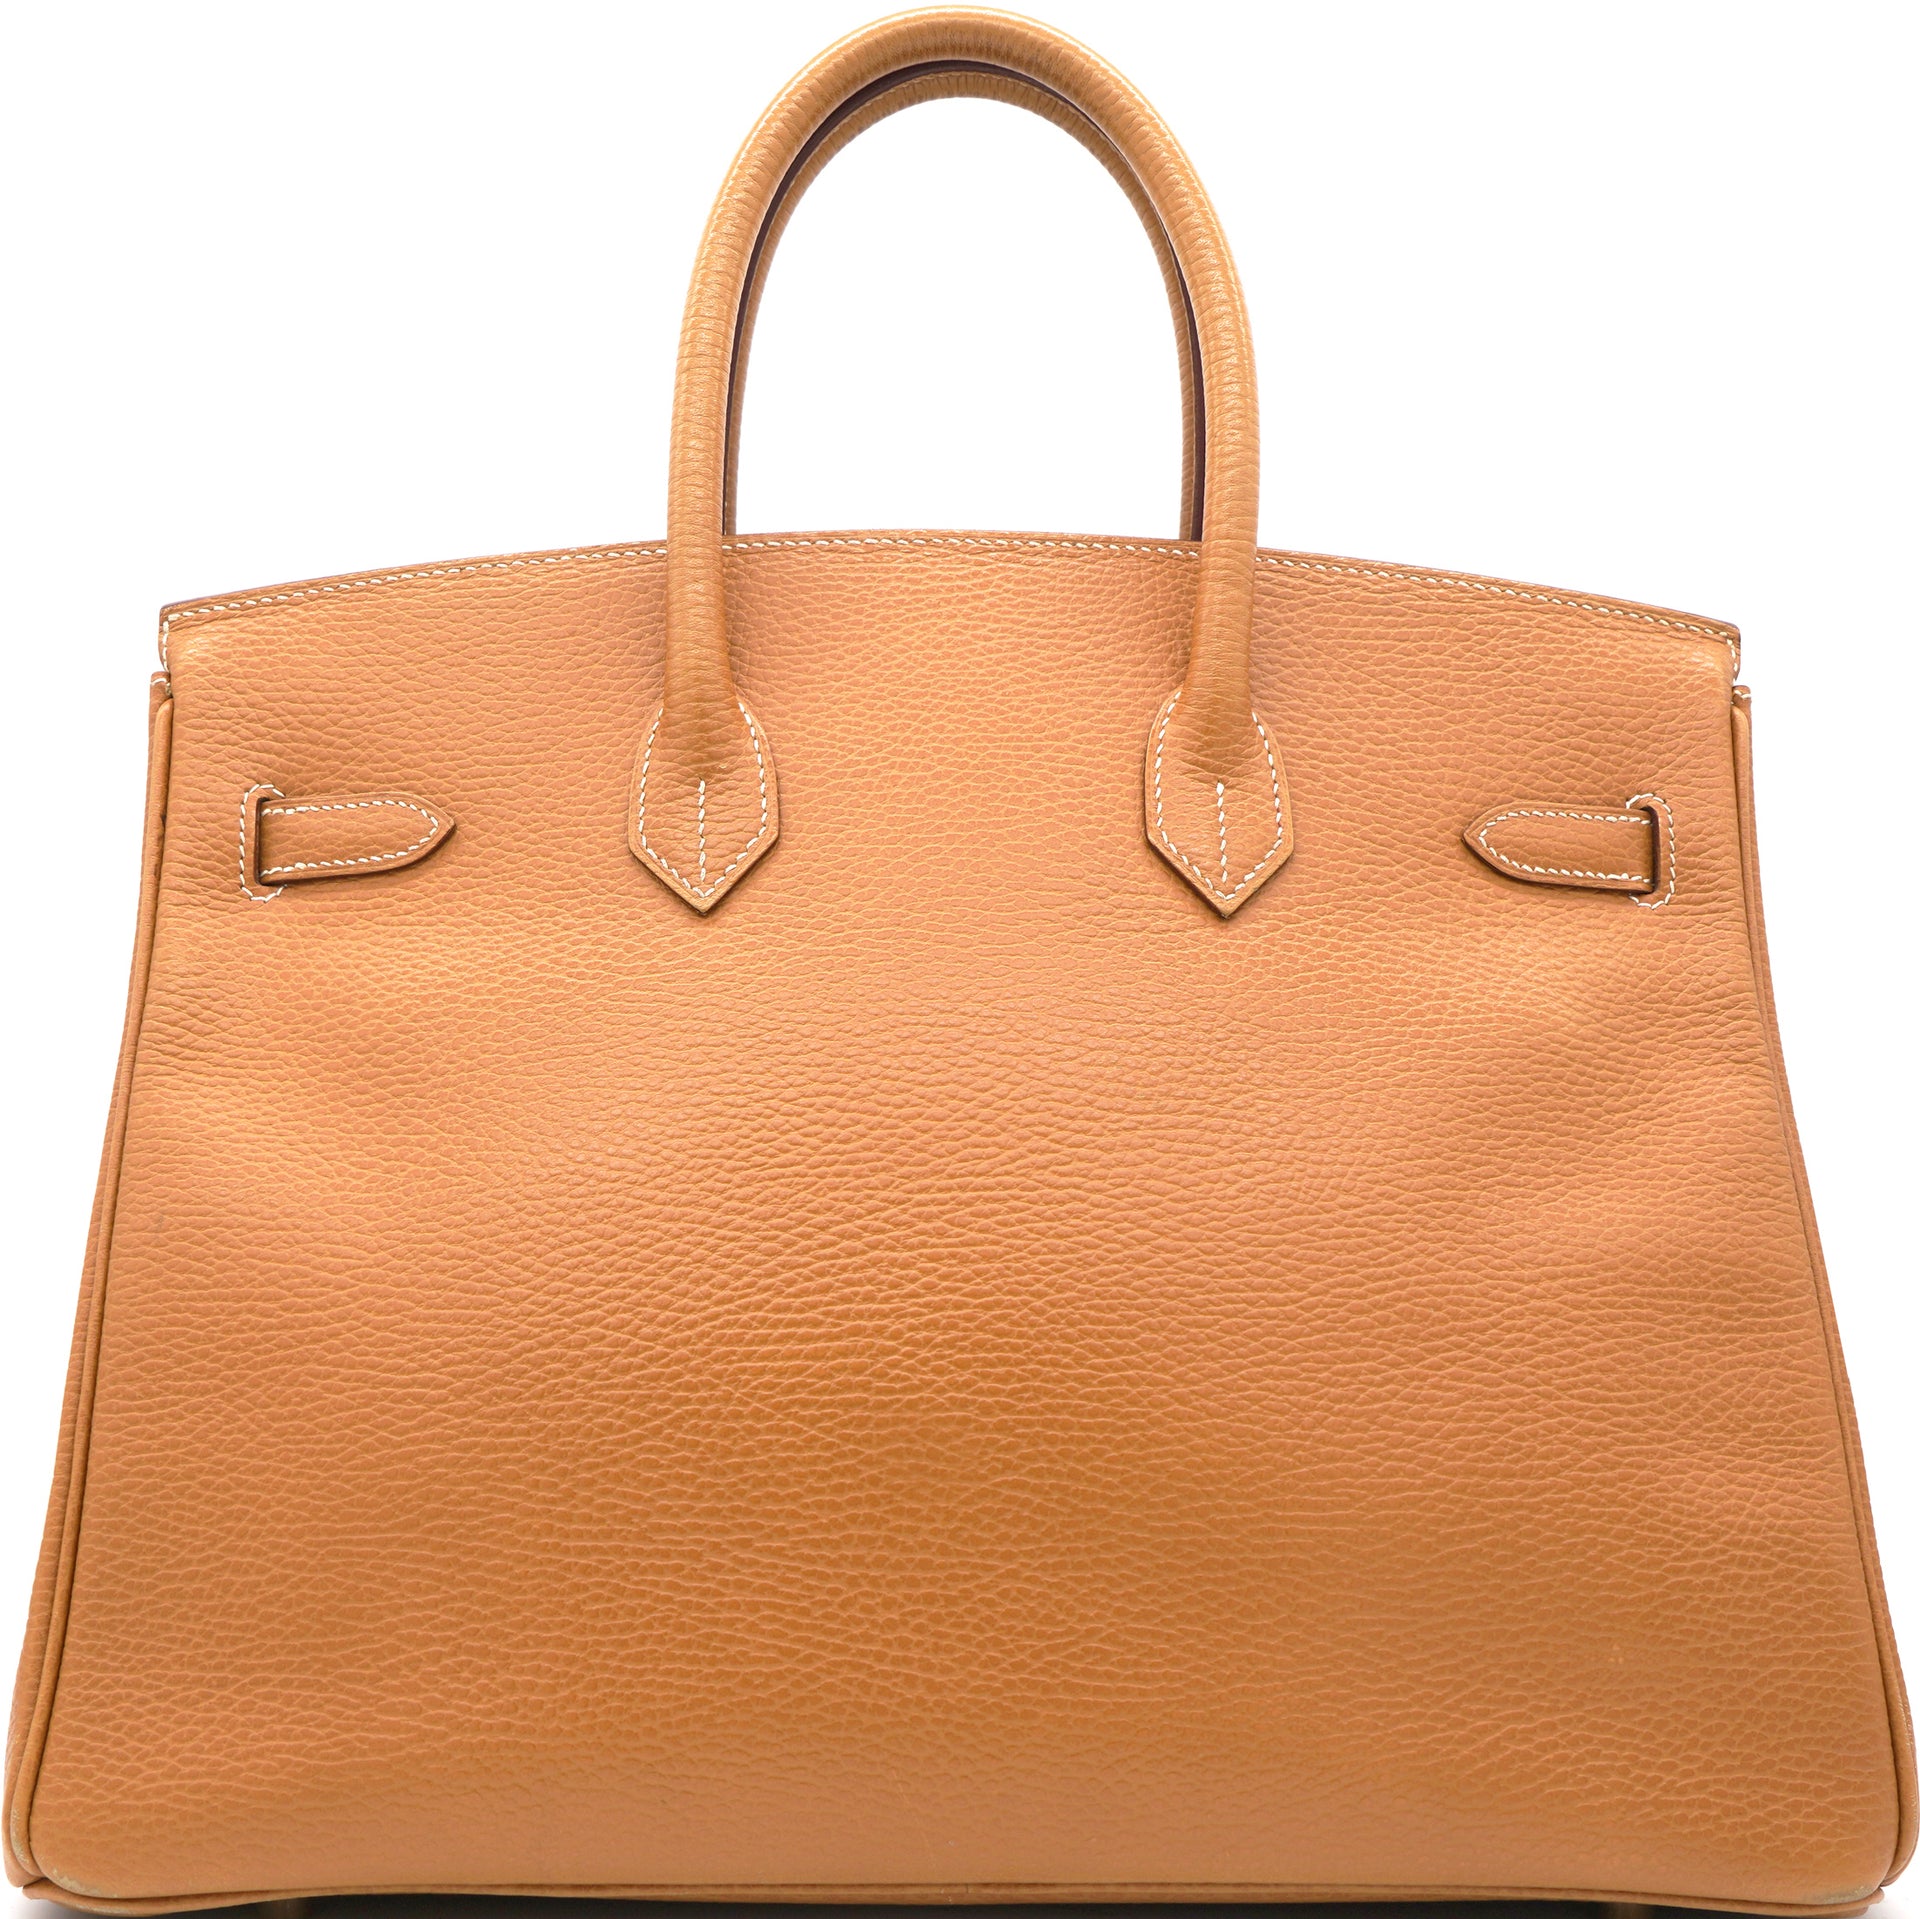 Togo Leather Birkin 35 Bag Natural Sable